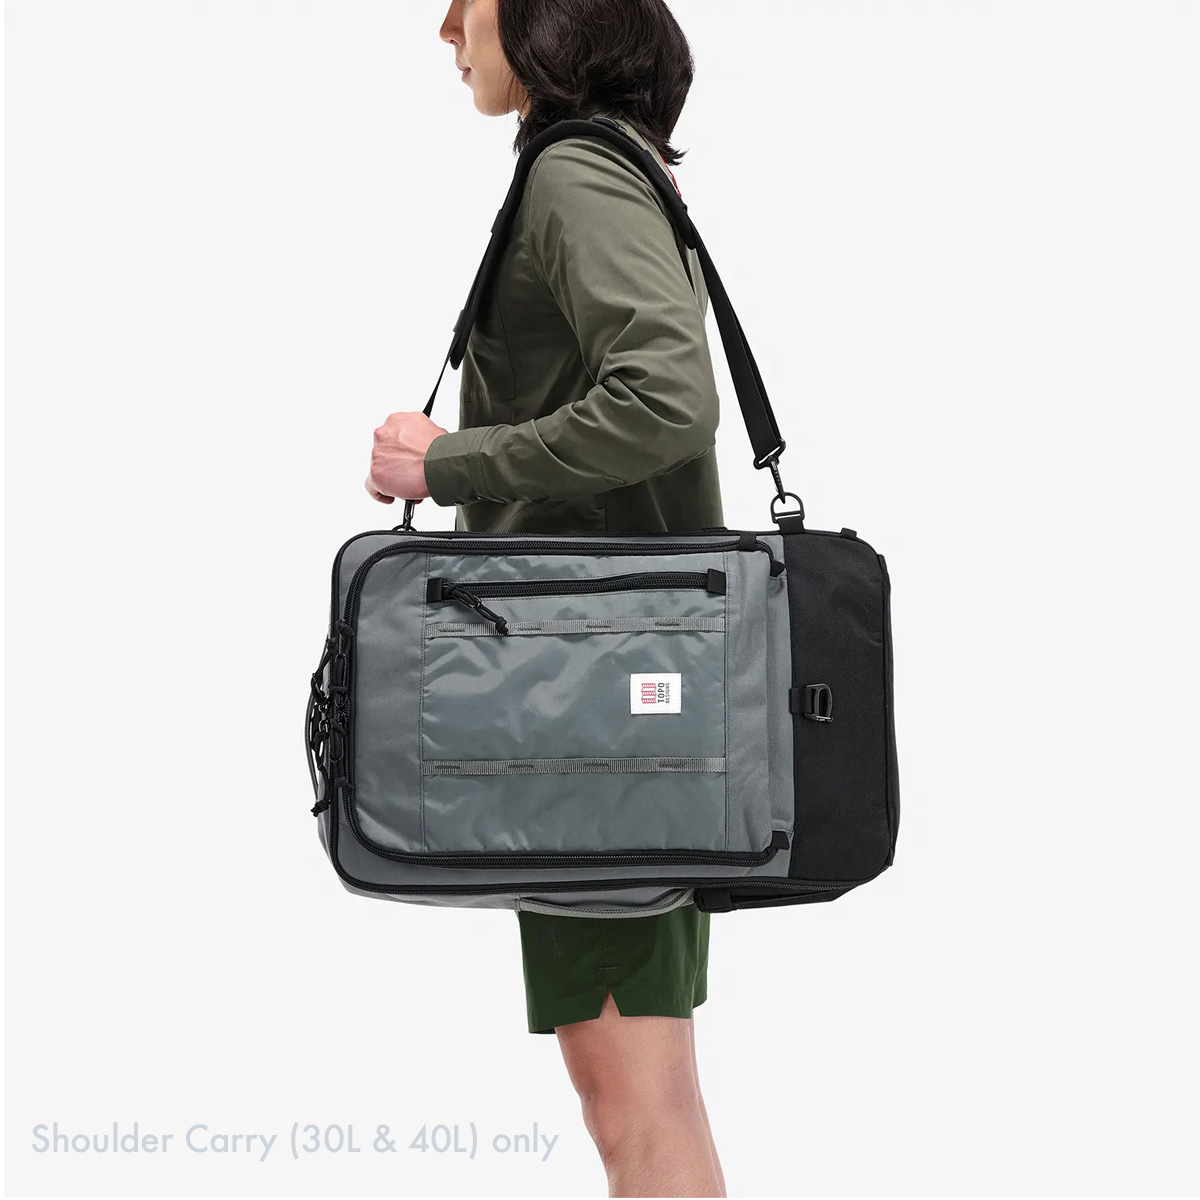 Topo Designs Global Travel Bag Shoulder Carry